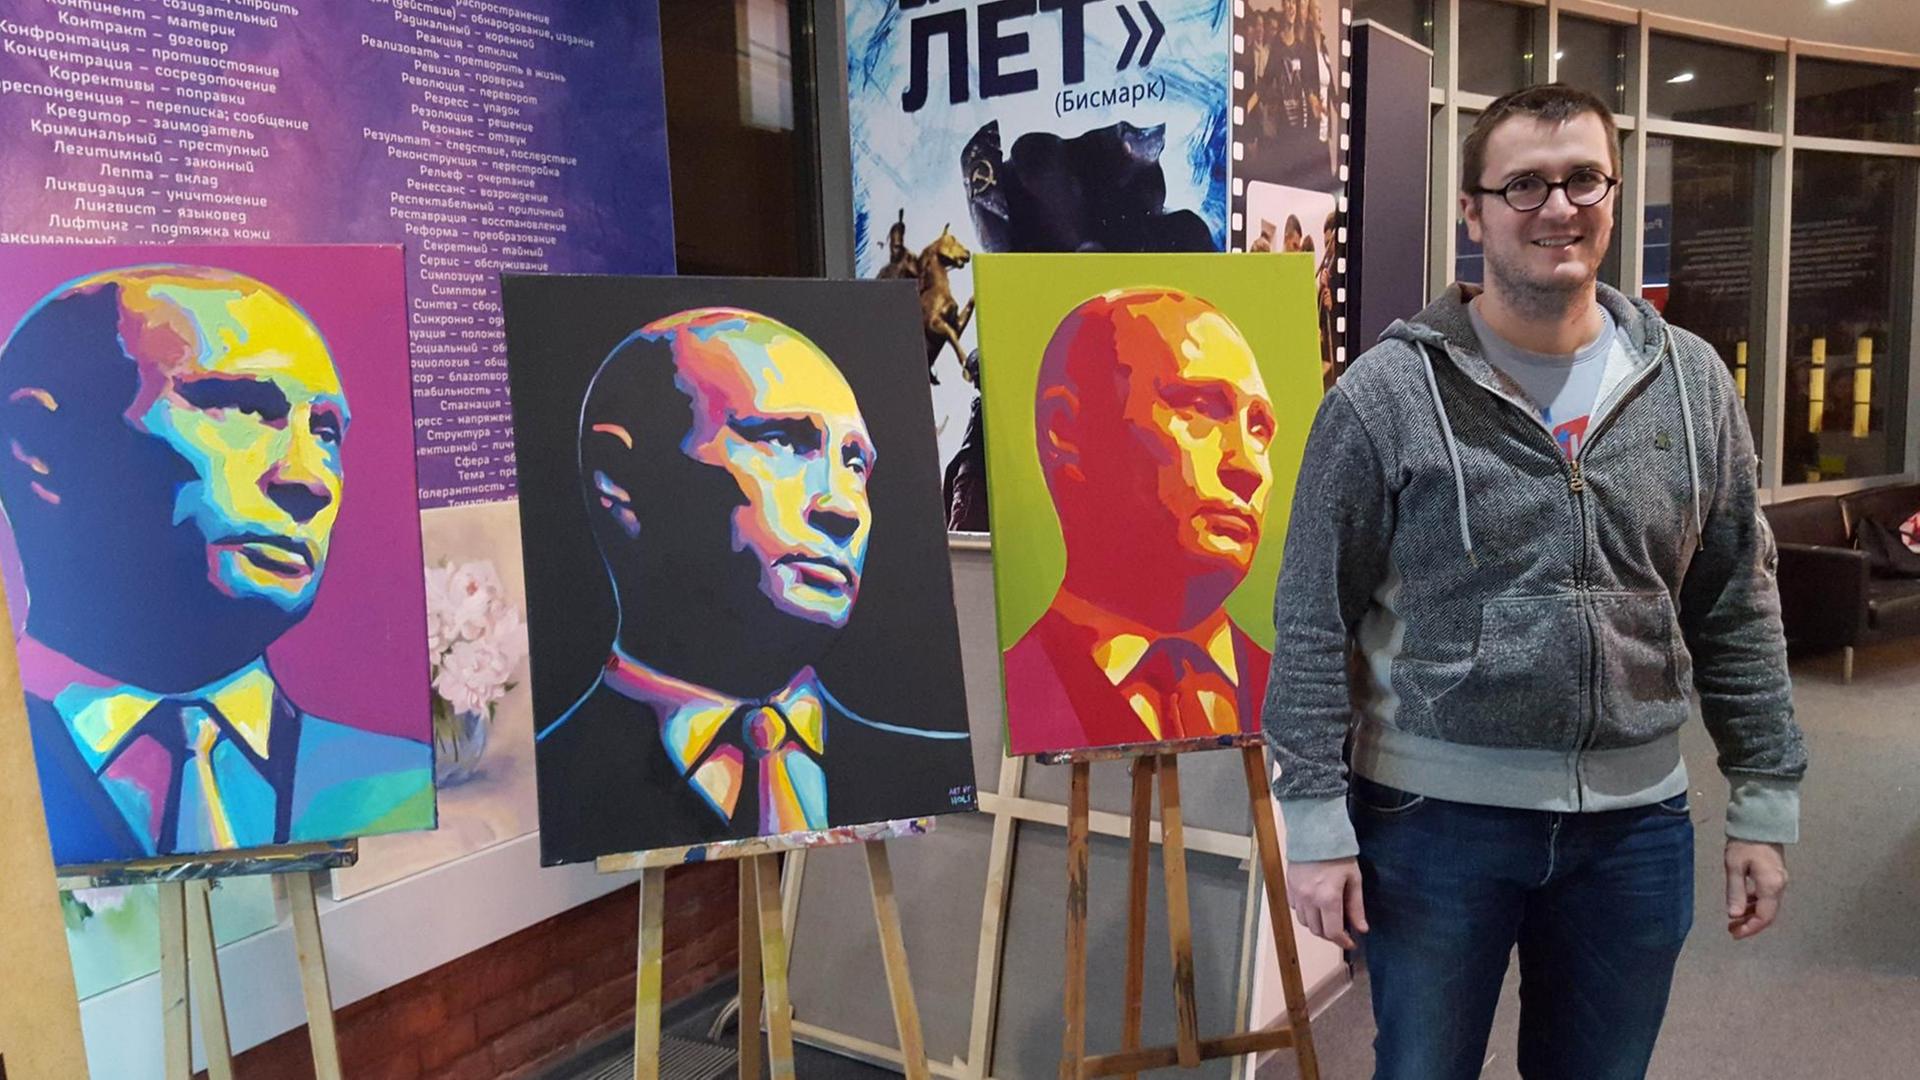 Im Büro der Putin-Jugend "Setj" in Moskau. Der Mann heißt Marathon Wichljanzew und ist der Sprecher.